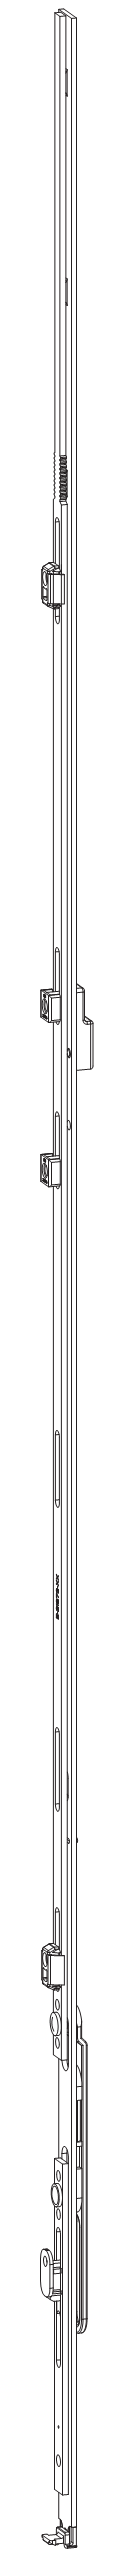 GU-ITALIA -  Catenaccio UNI-JET asta a leva altezza maniglia fissa per seconda anta - gr / dim. 1690 - alt. man. LEVA ZH - lbb/hbb 1601 - 1850